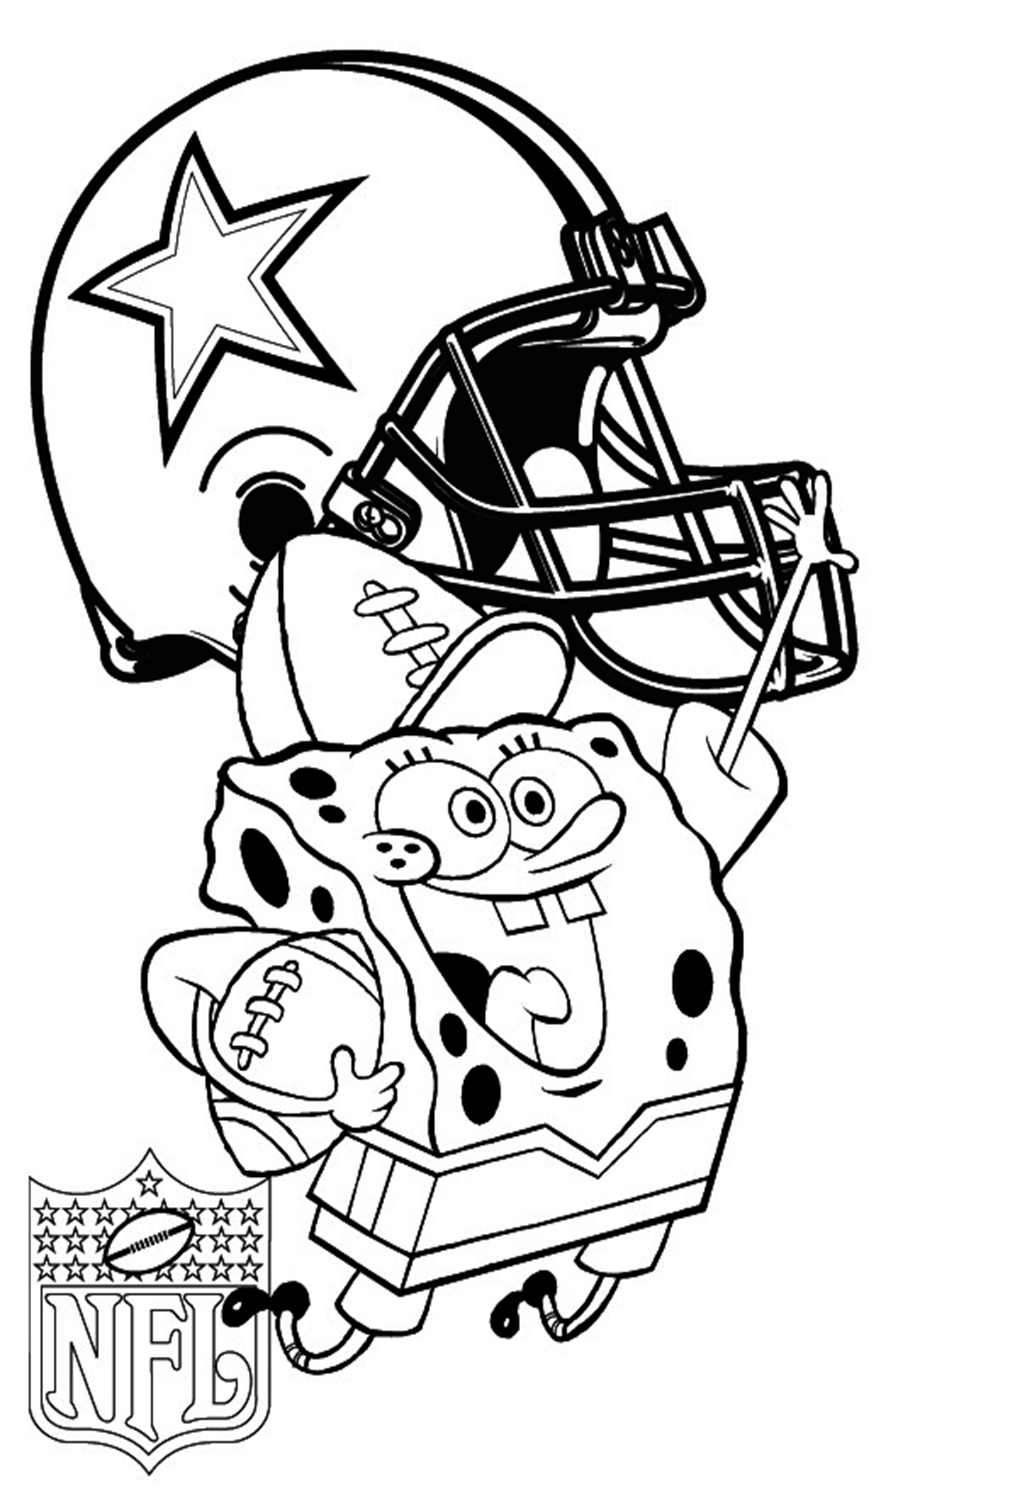 Dallas Cowboys with Spongebob Coloring Page